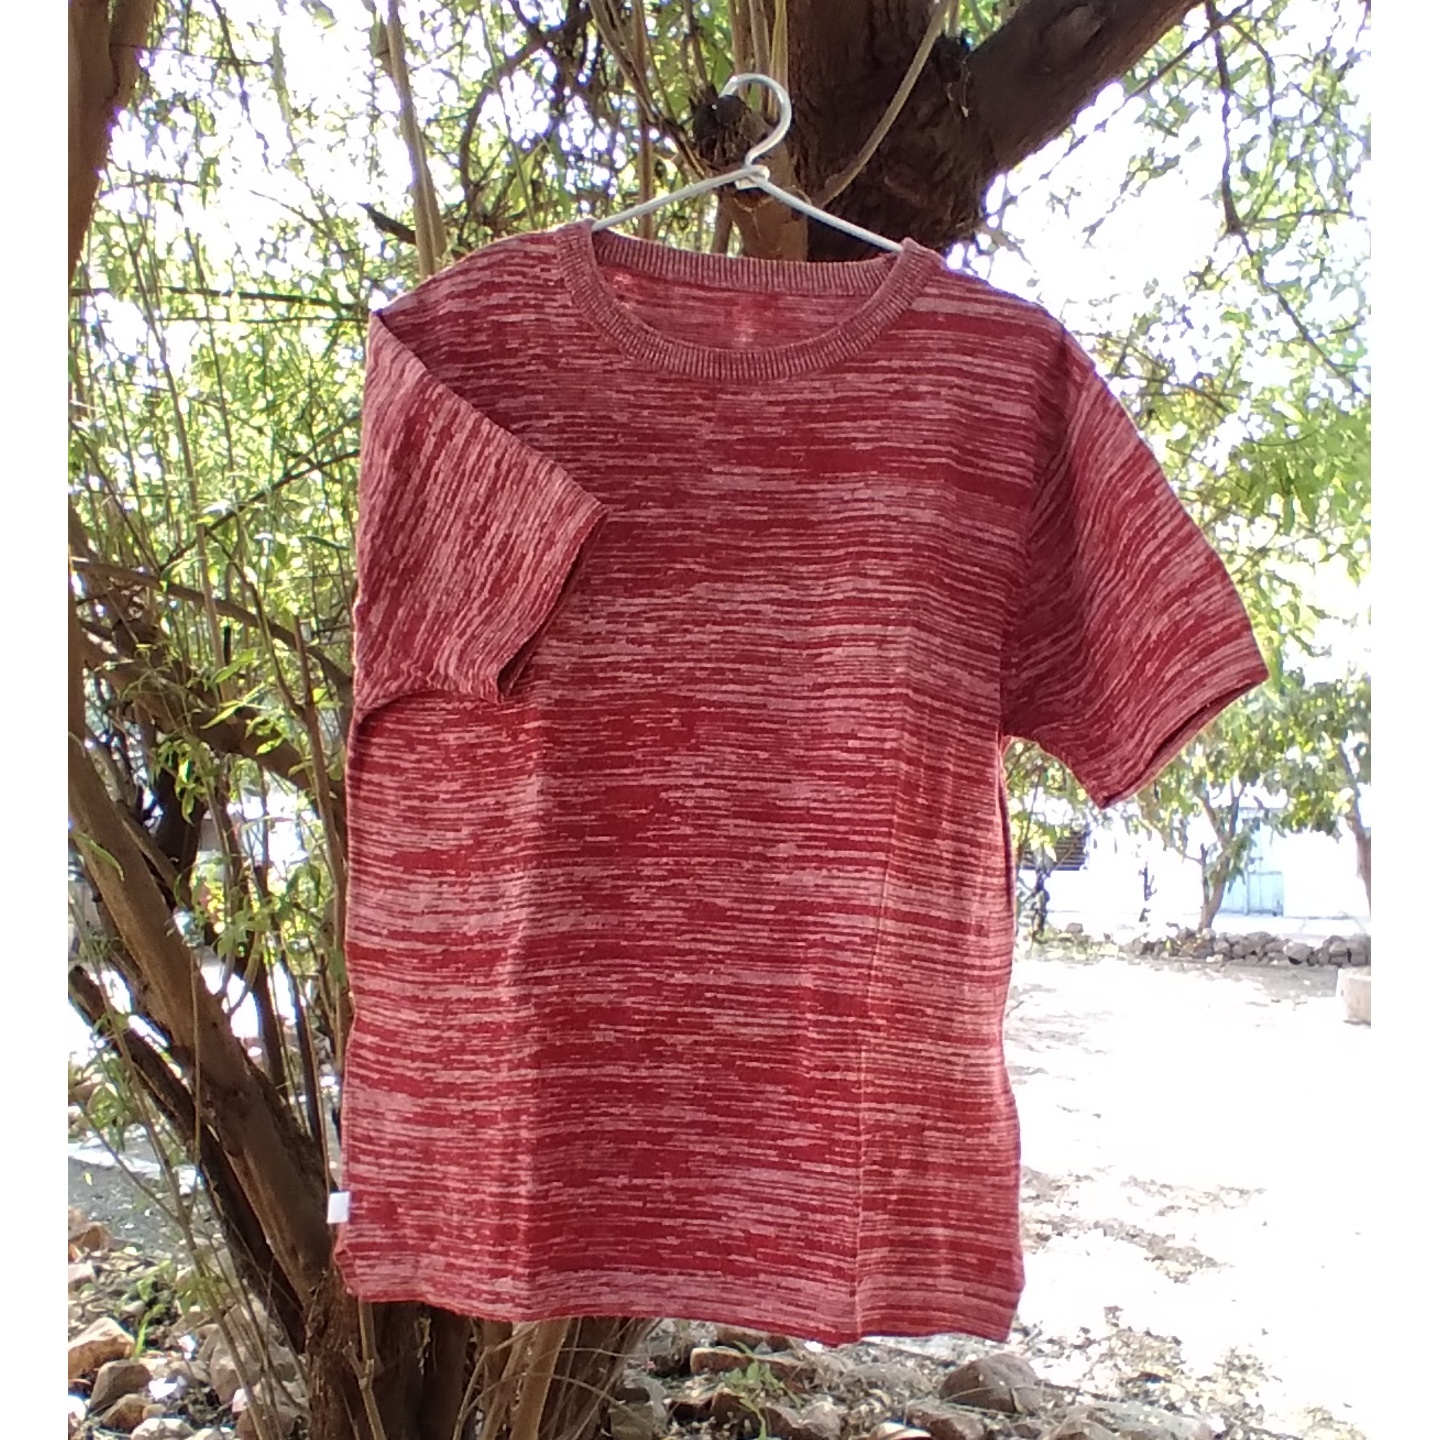 Textured Red and Kora T-shirt